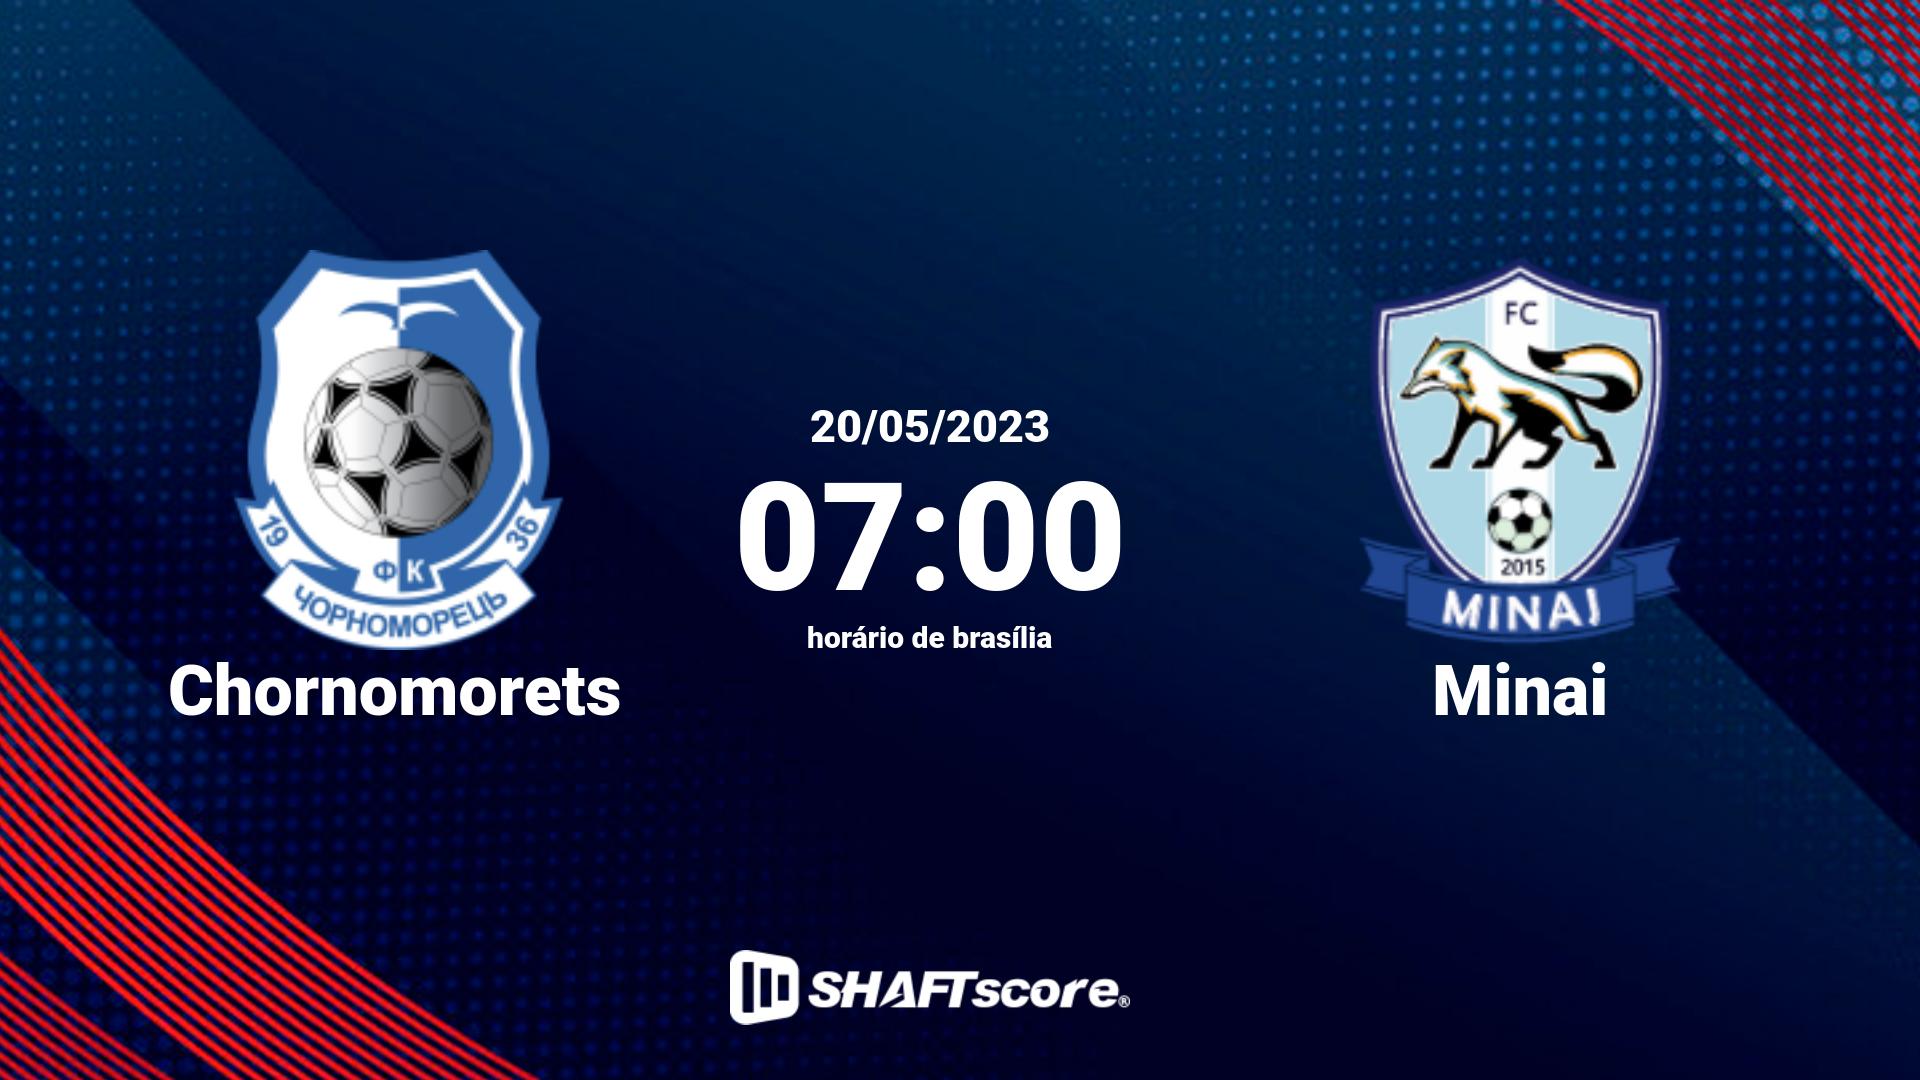 Estatísticas do jogo Chornomorets vs Minai 20.05 07:00